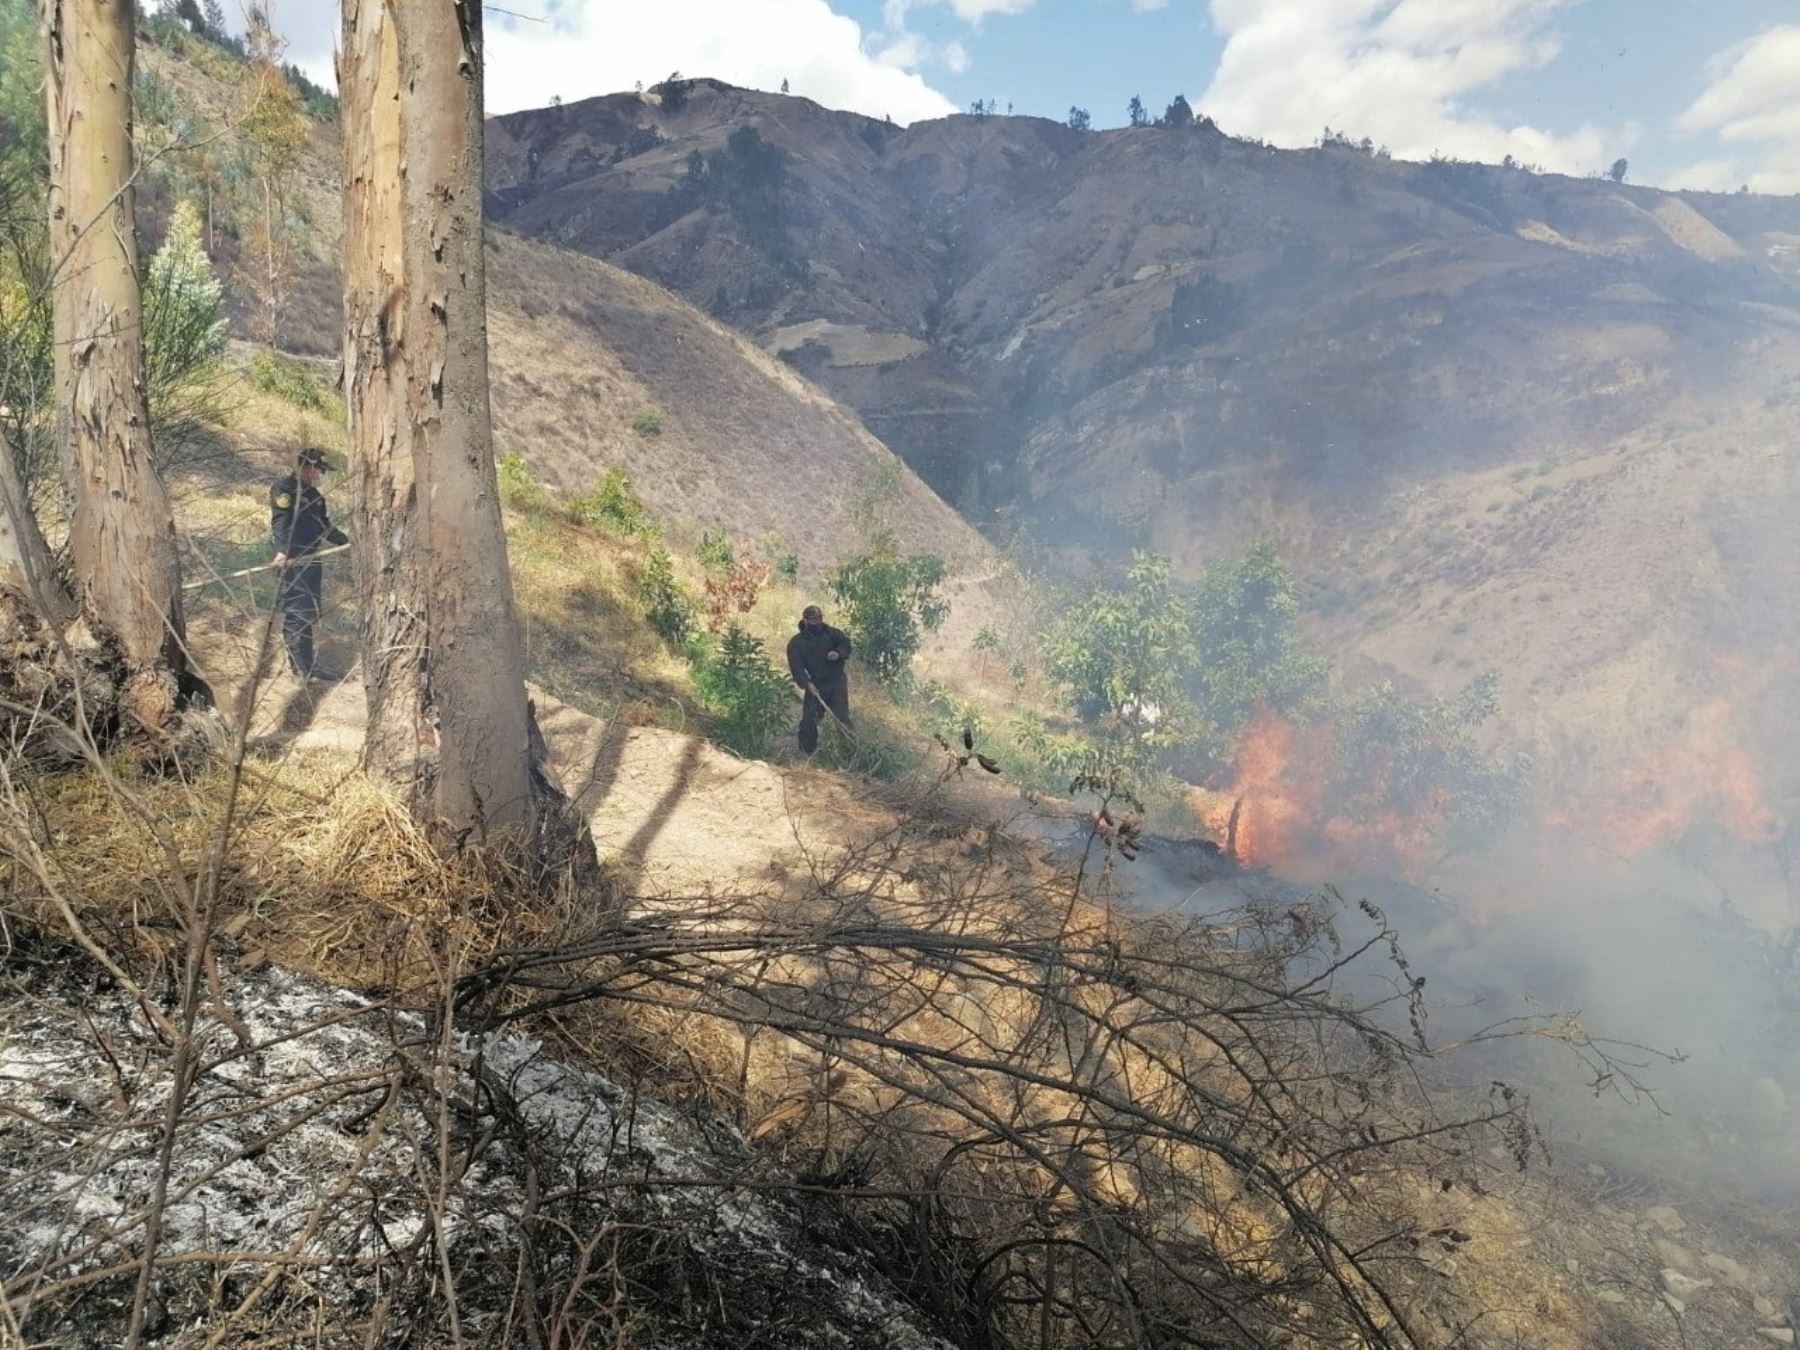 Brigadistas combaten incendio forestal que ya arrasó con 15 hectáreas de pastos y bosques de eucalipto en la provincia de Pallasca, región Áncash.